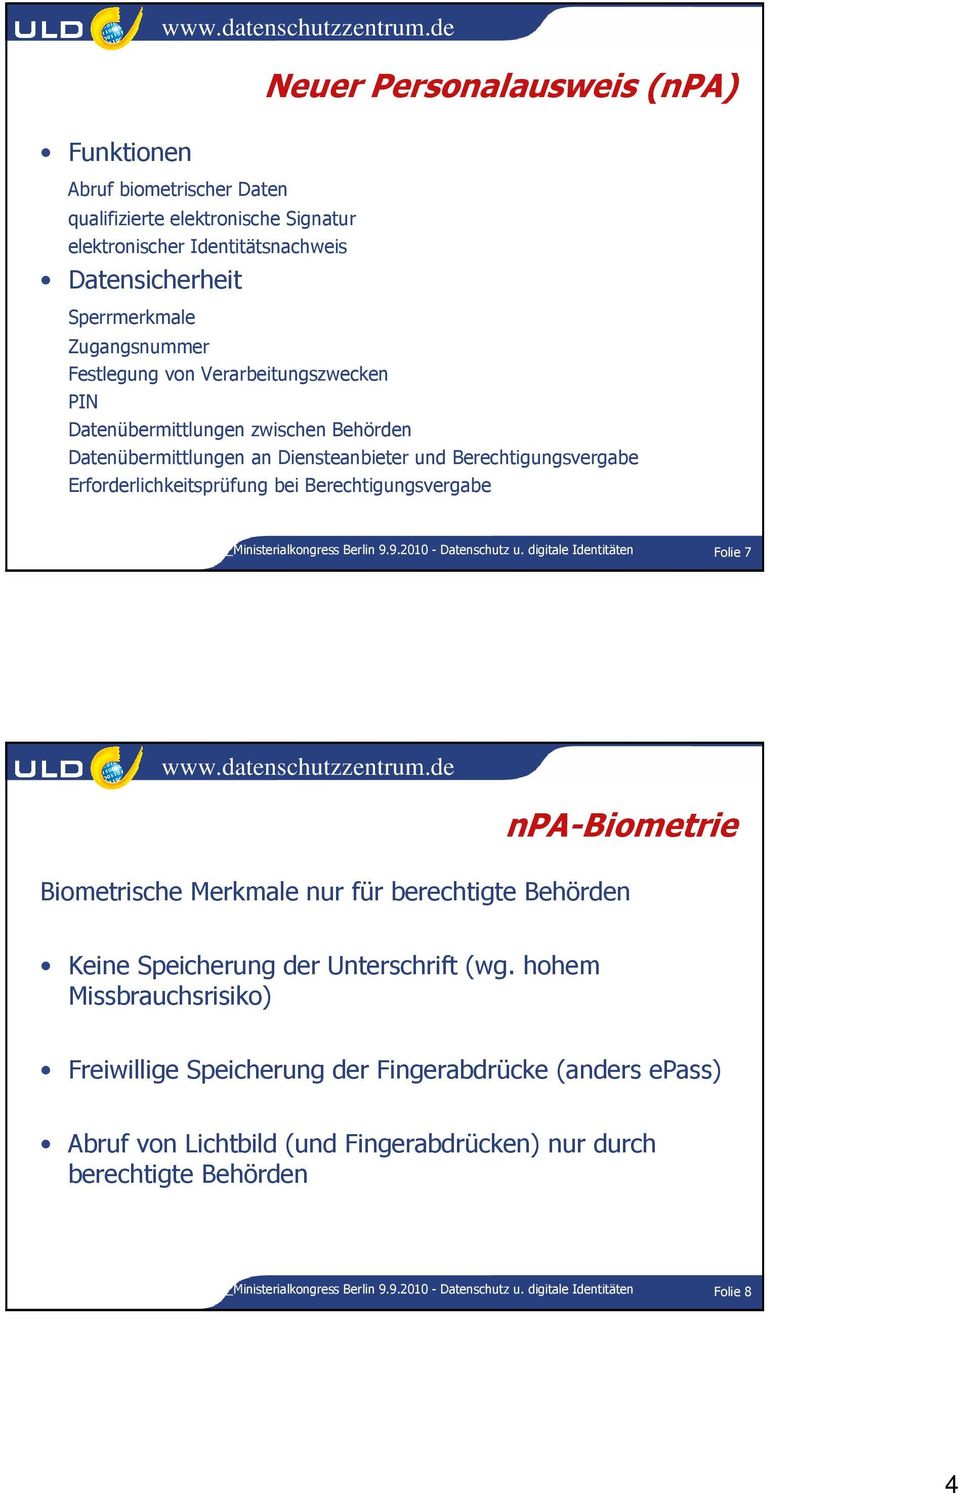 Berlin 9.9.2010 - Datenschutz u. digitale Identitäten Folie 7 npa-biometrie Biometrische Merkmale nur für berechtigte Behörden Keine Speicherung der Unterschrift (wg.